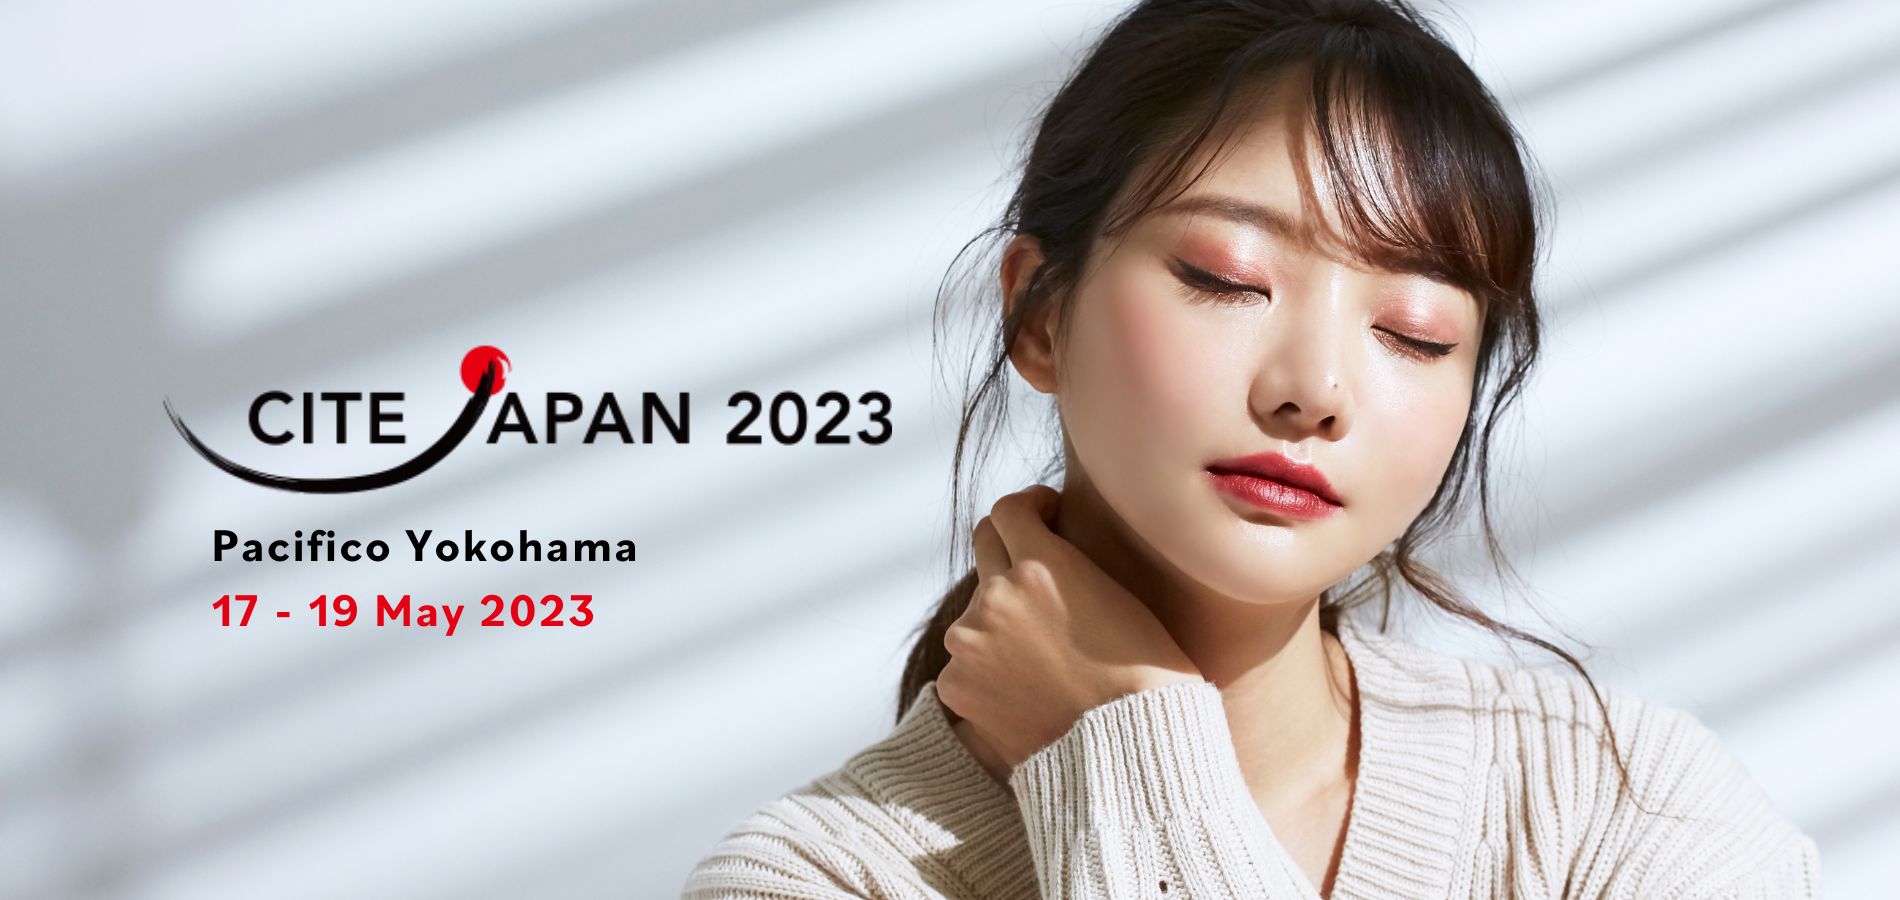 CITE Japan 2023 웹사이트 주요 이미지